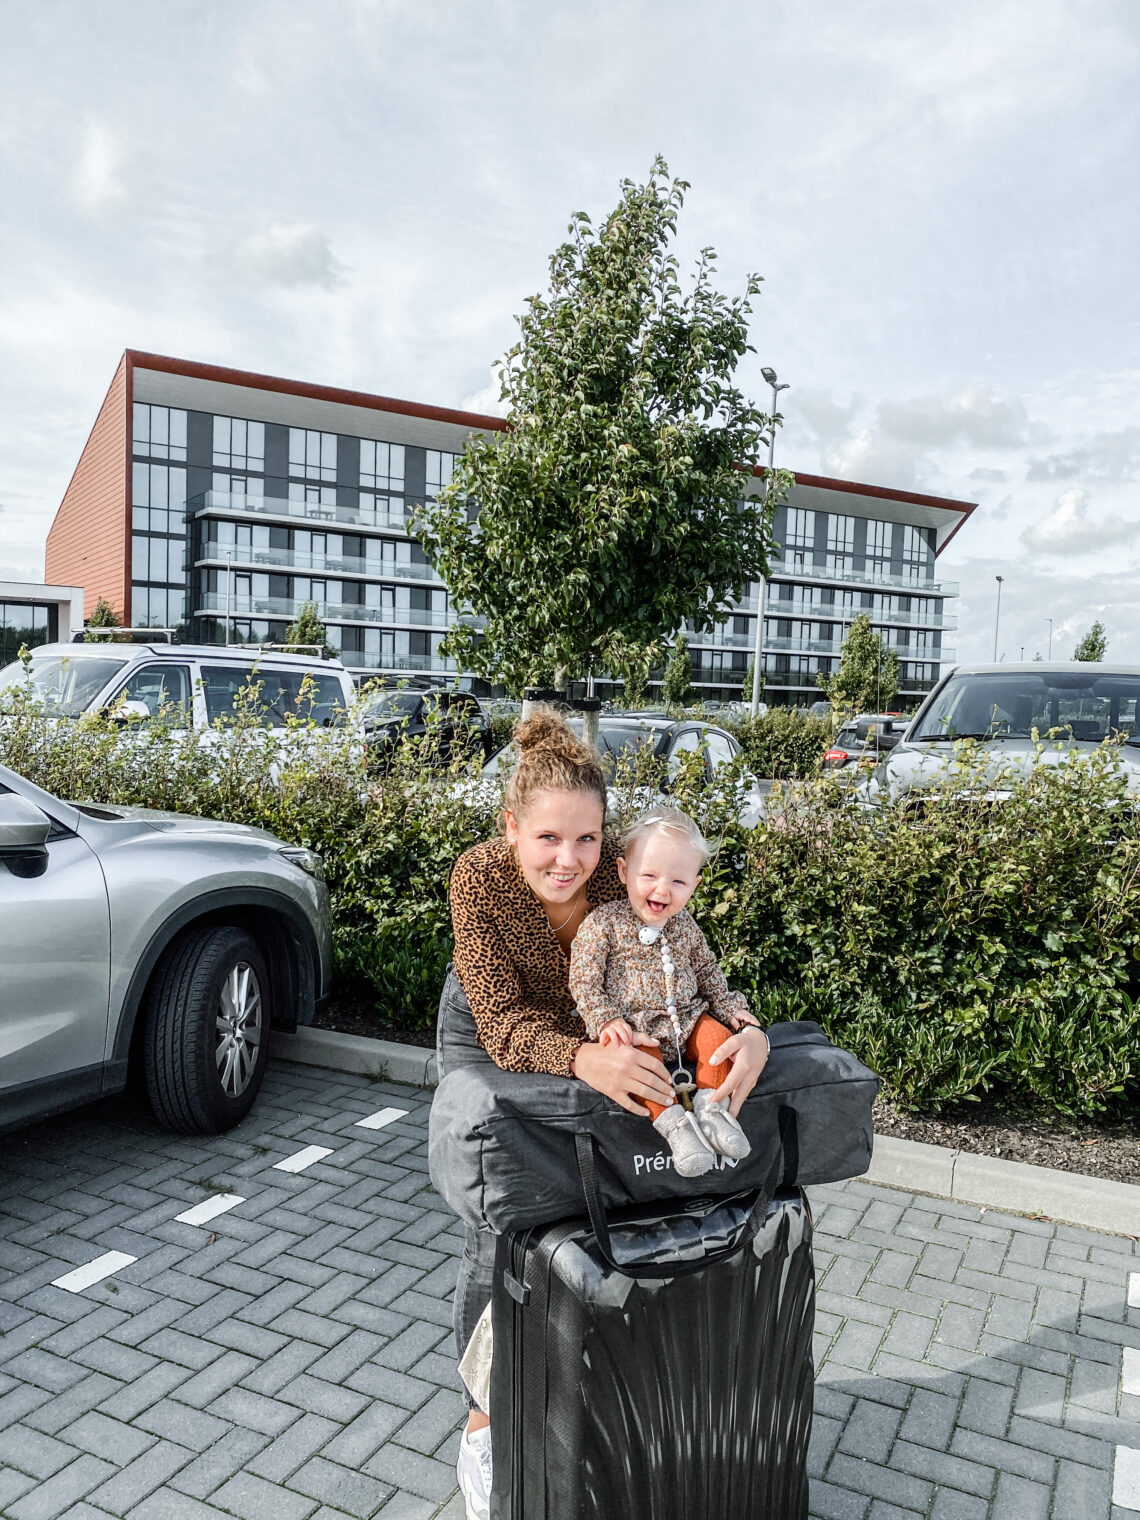 aanvulling Baan afschaffen Weekendje weg met een baby - Huisje in Brabant